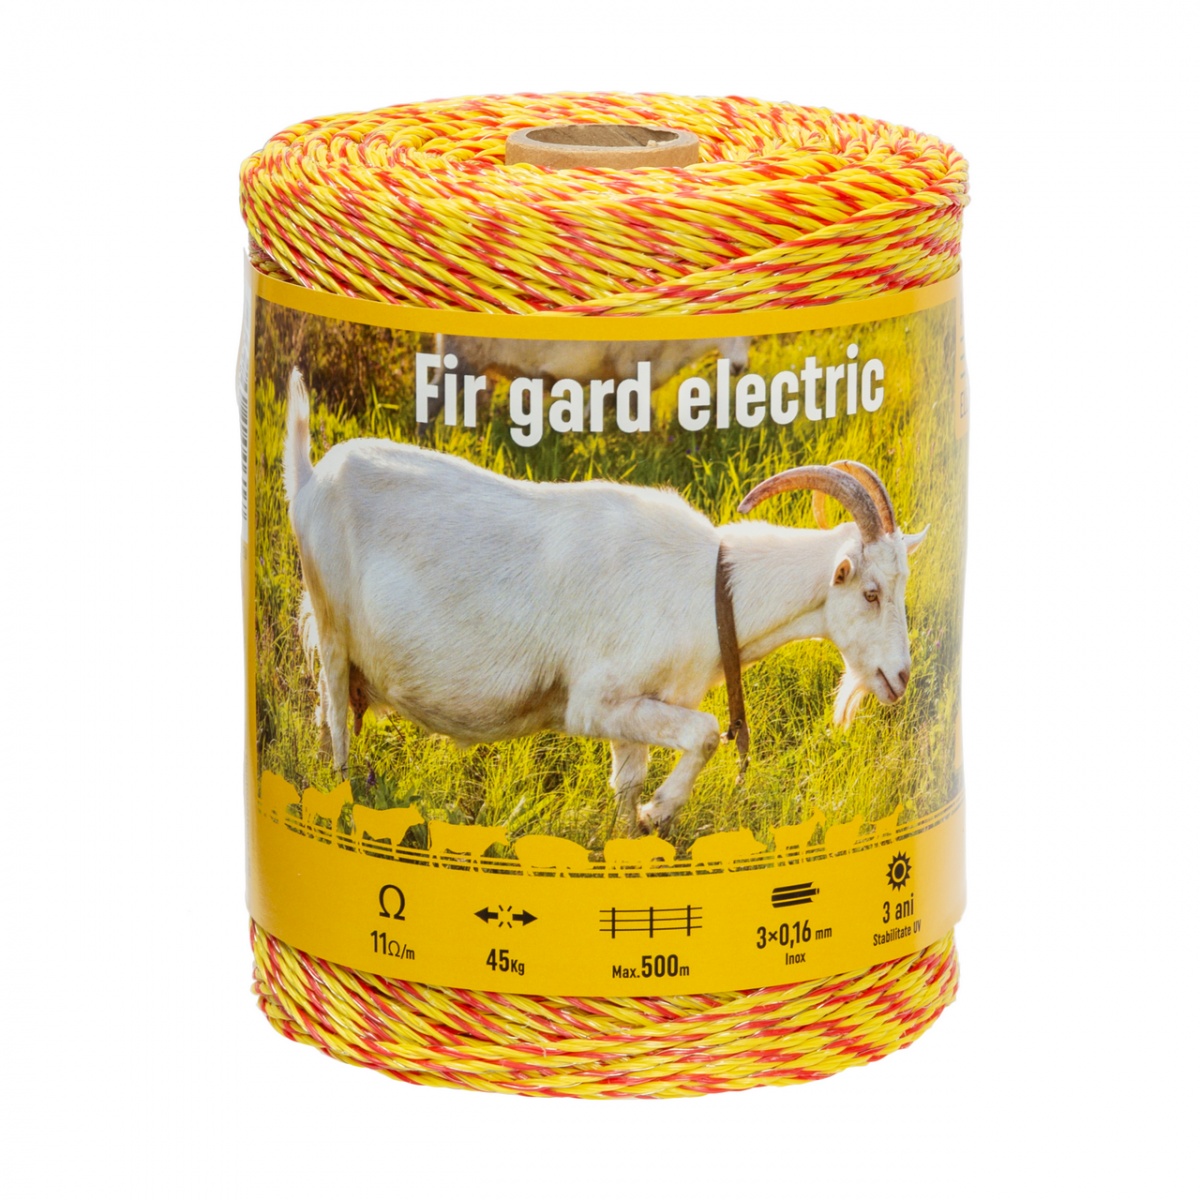 Fir gard electric - 500 m - 45 kg - 11 Ω/m